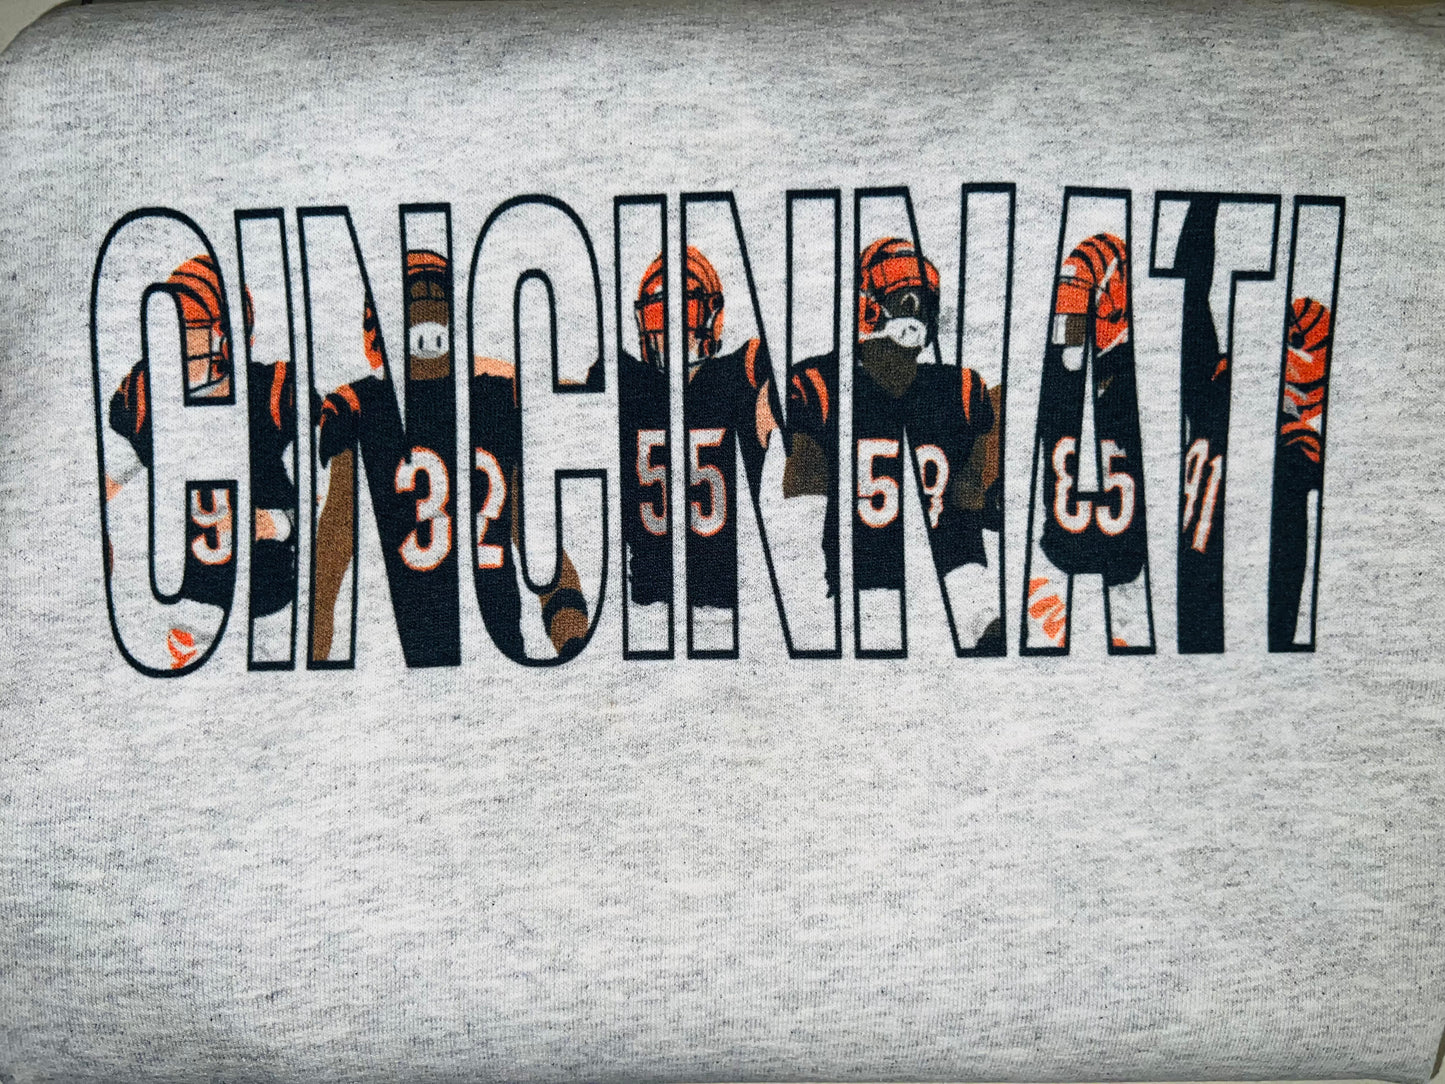 Cincinnati Bengals Sweatshirt